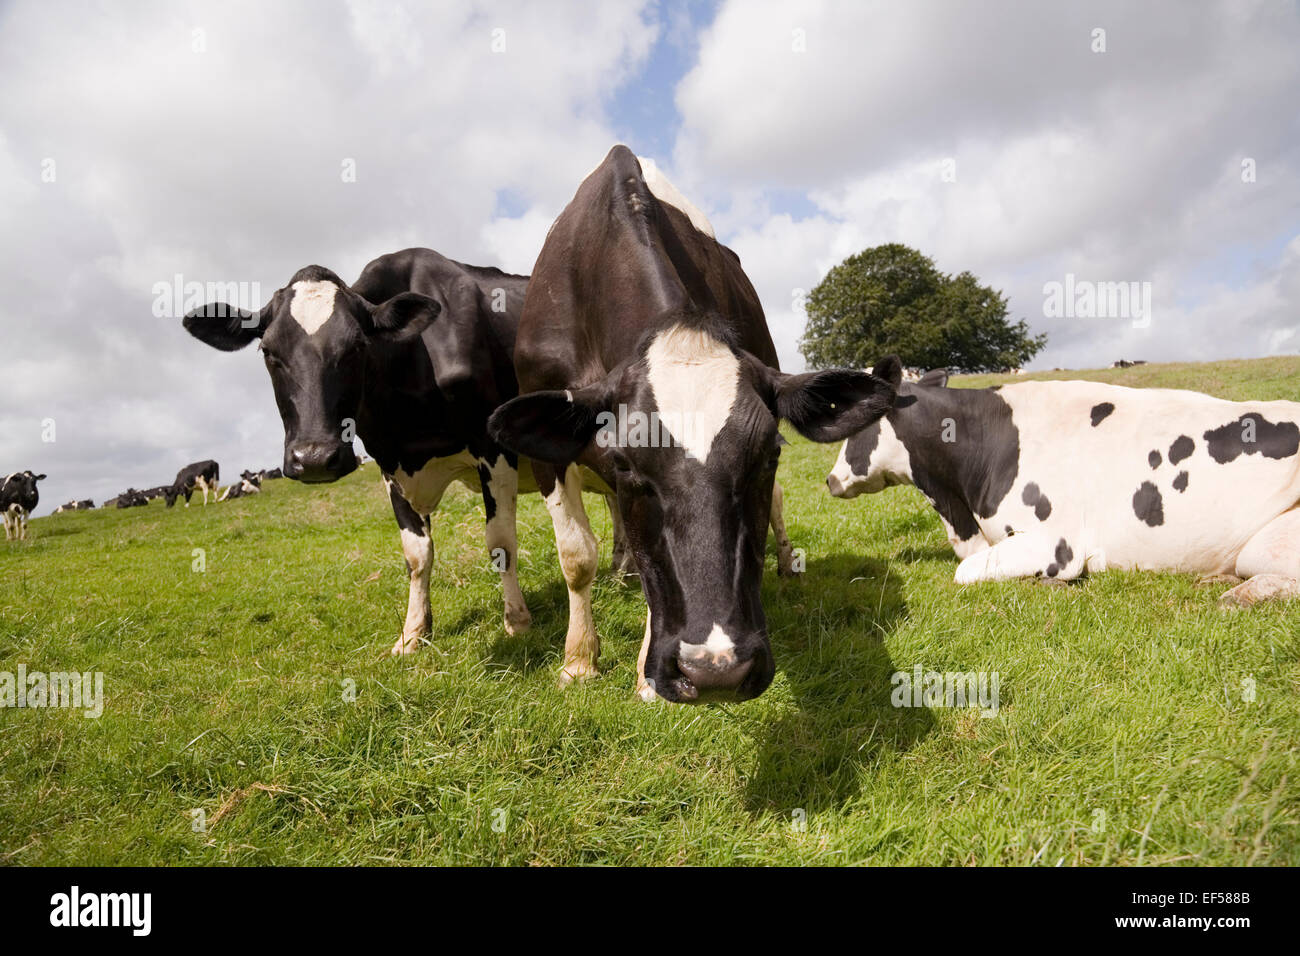 Zwei schwarz-weiße Kühe blicken aufmerksam auf die Kamera, während der Rest der Herde sich hinlegt oder grast. Gedreht auf einer Wiese in Somerset, England Stockfoto